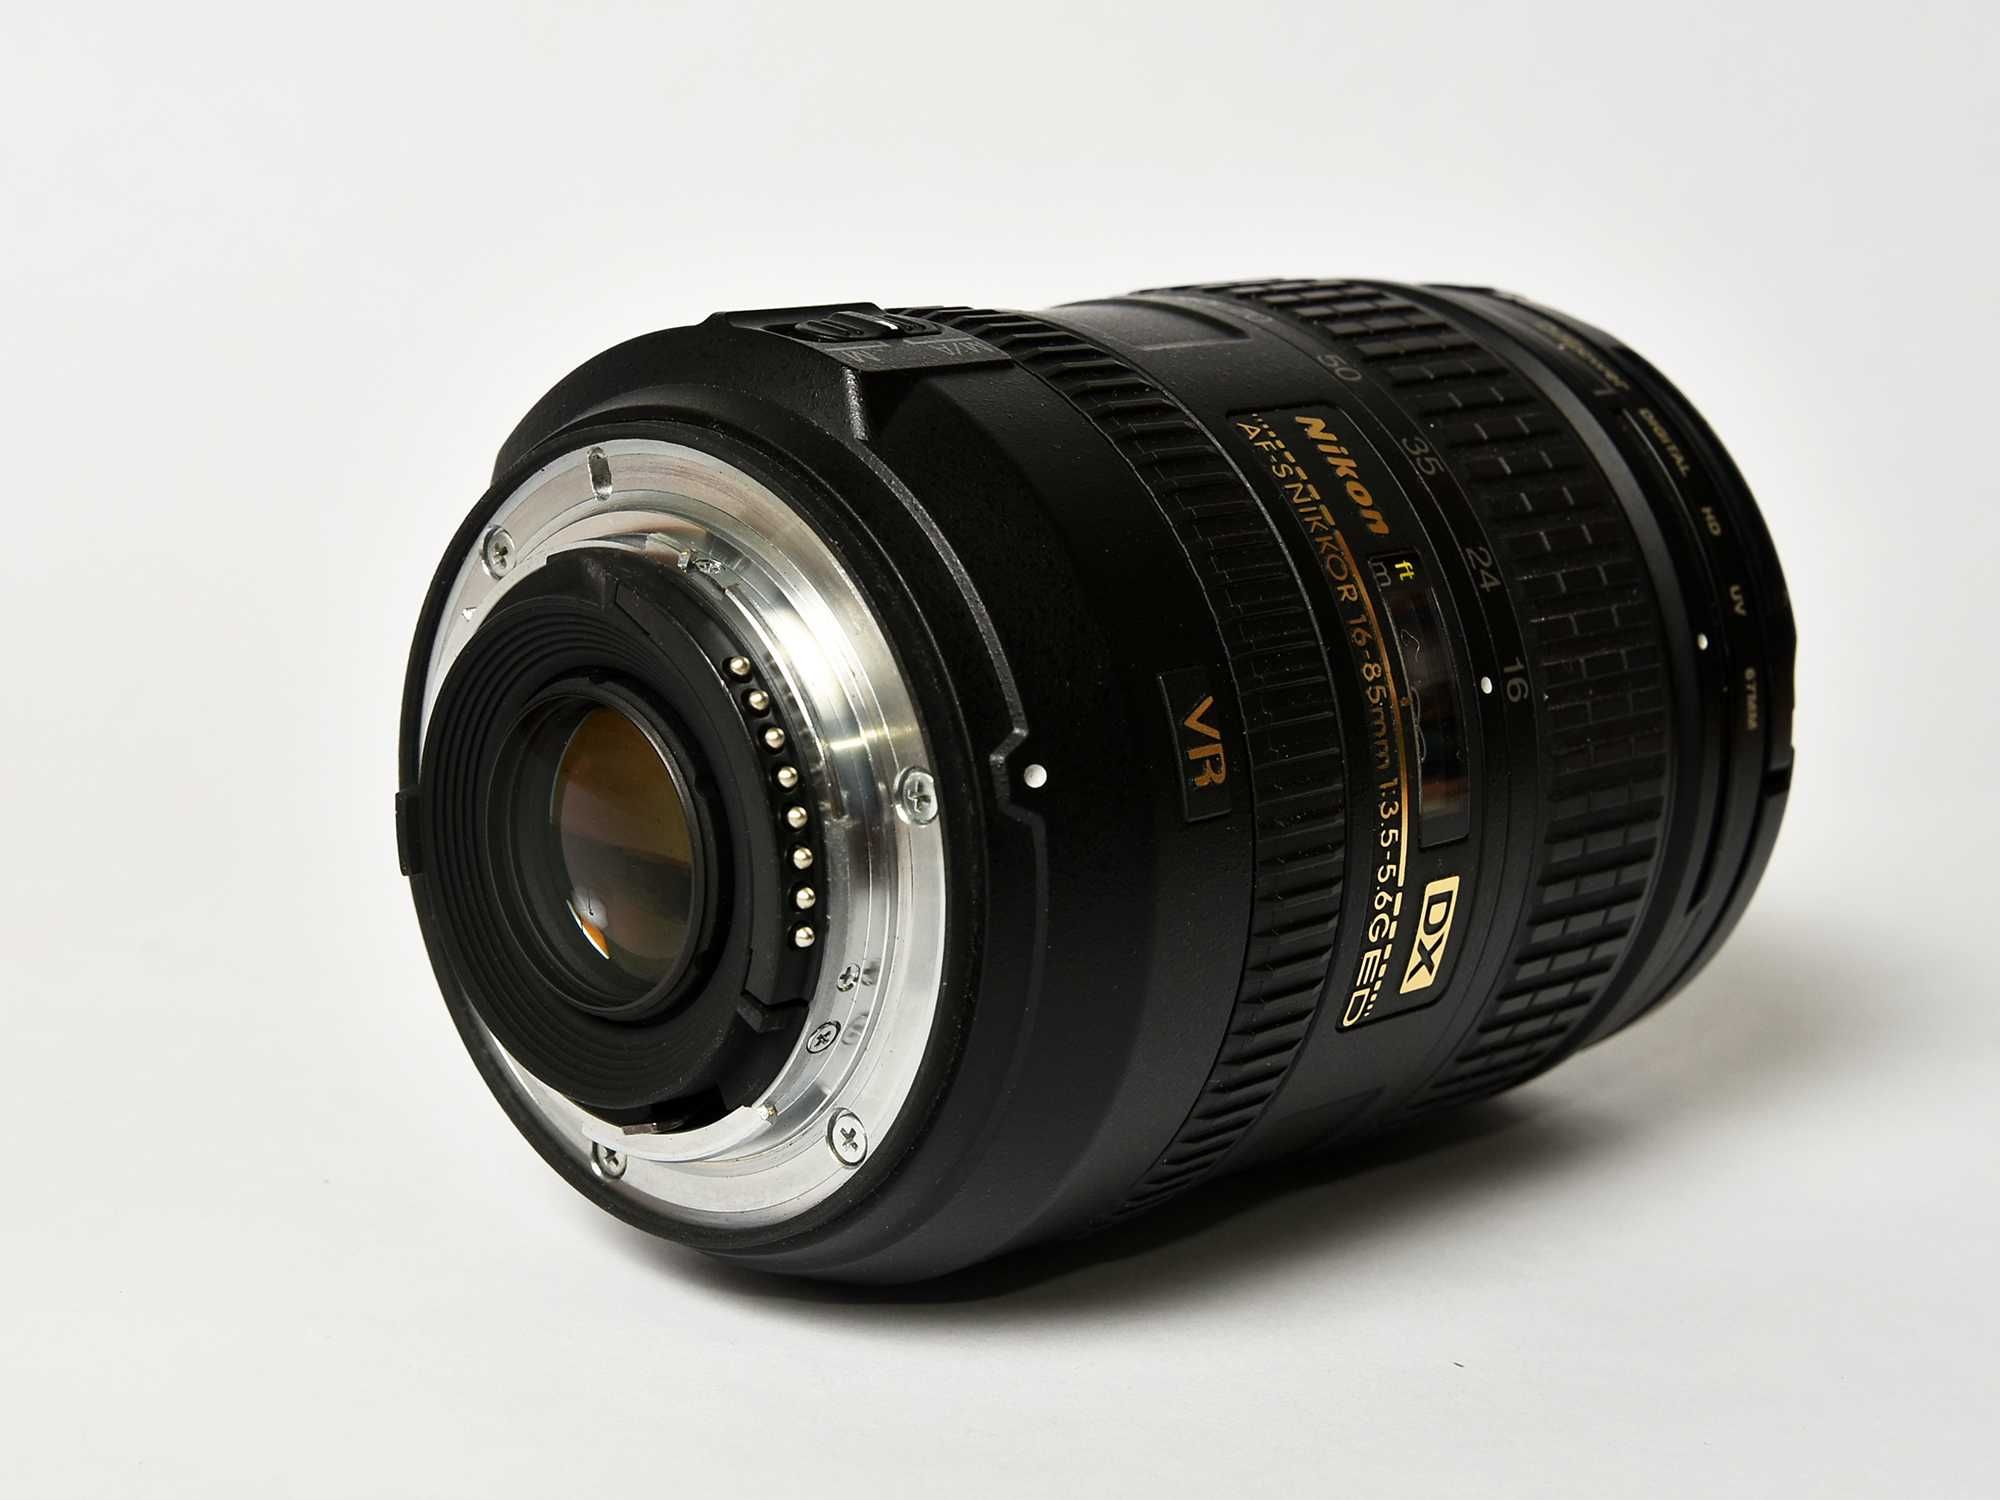 Nikon AF-S 16-85mm f/3.5-5.6G ED VR DX.